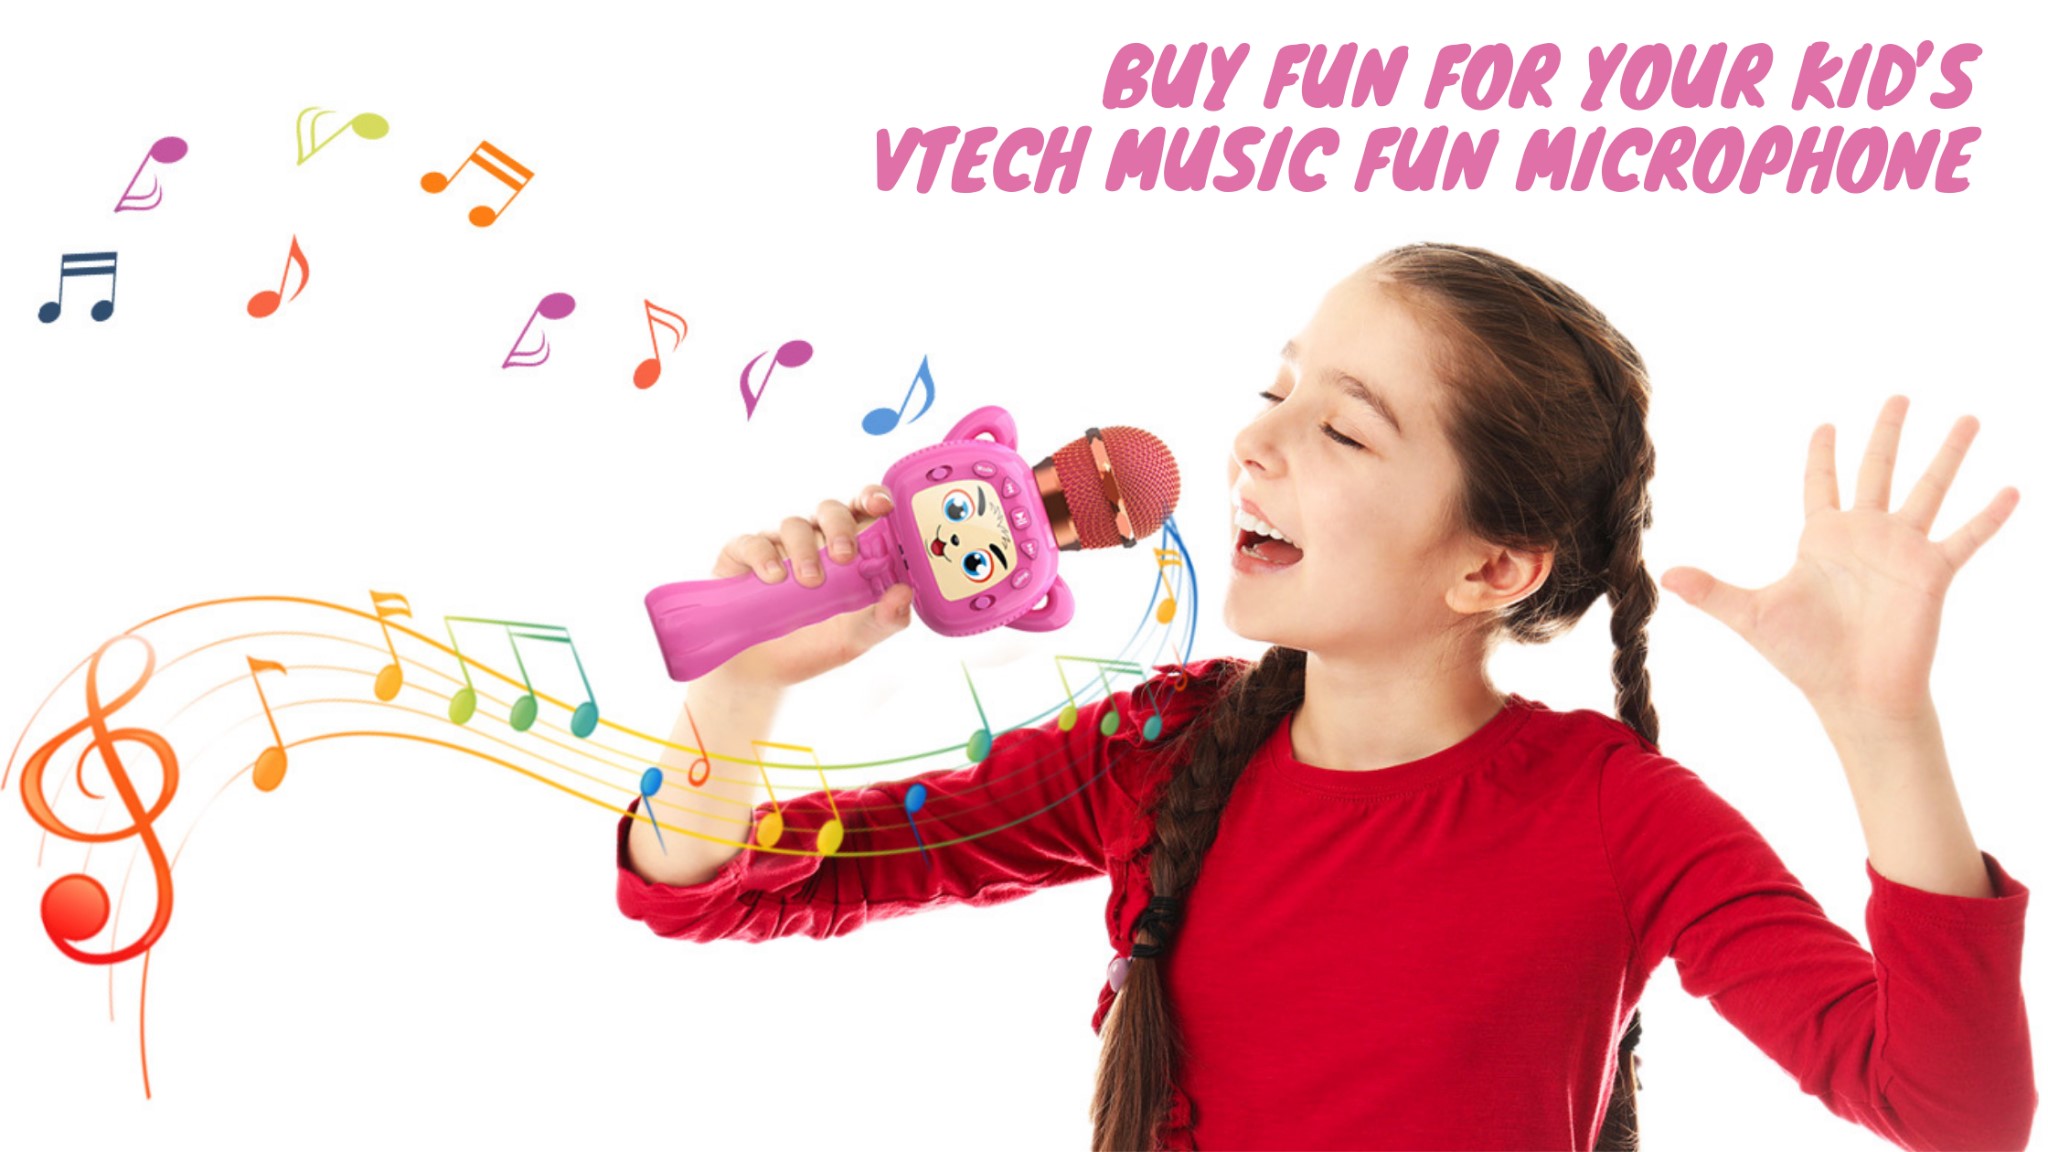 Kaufen Sie Spaß für Ihre Kinder Wickenmusik Spaßmikrofon